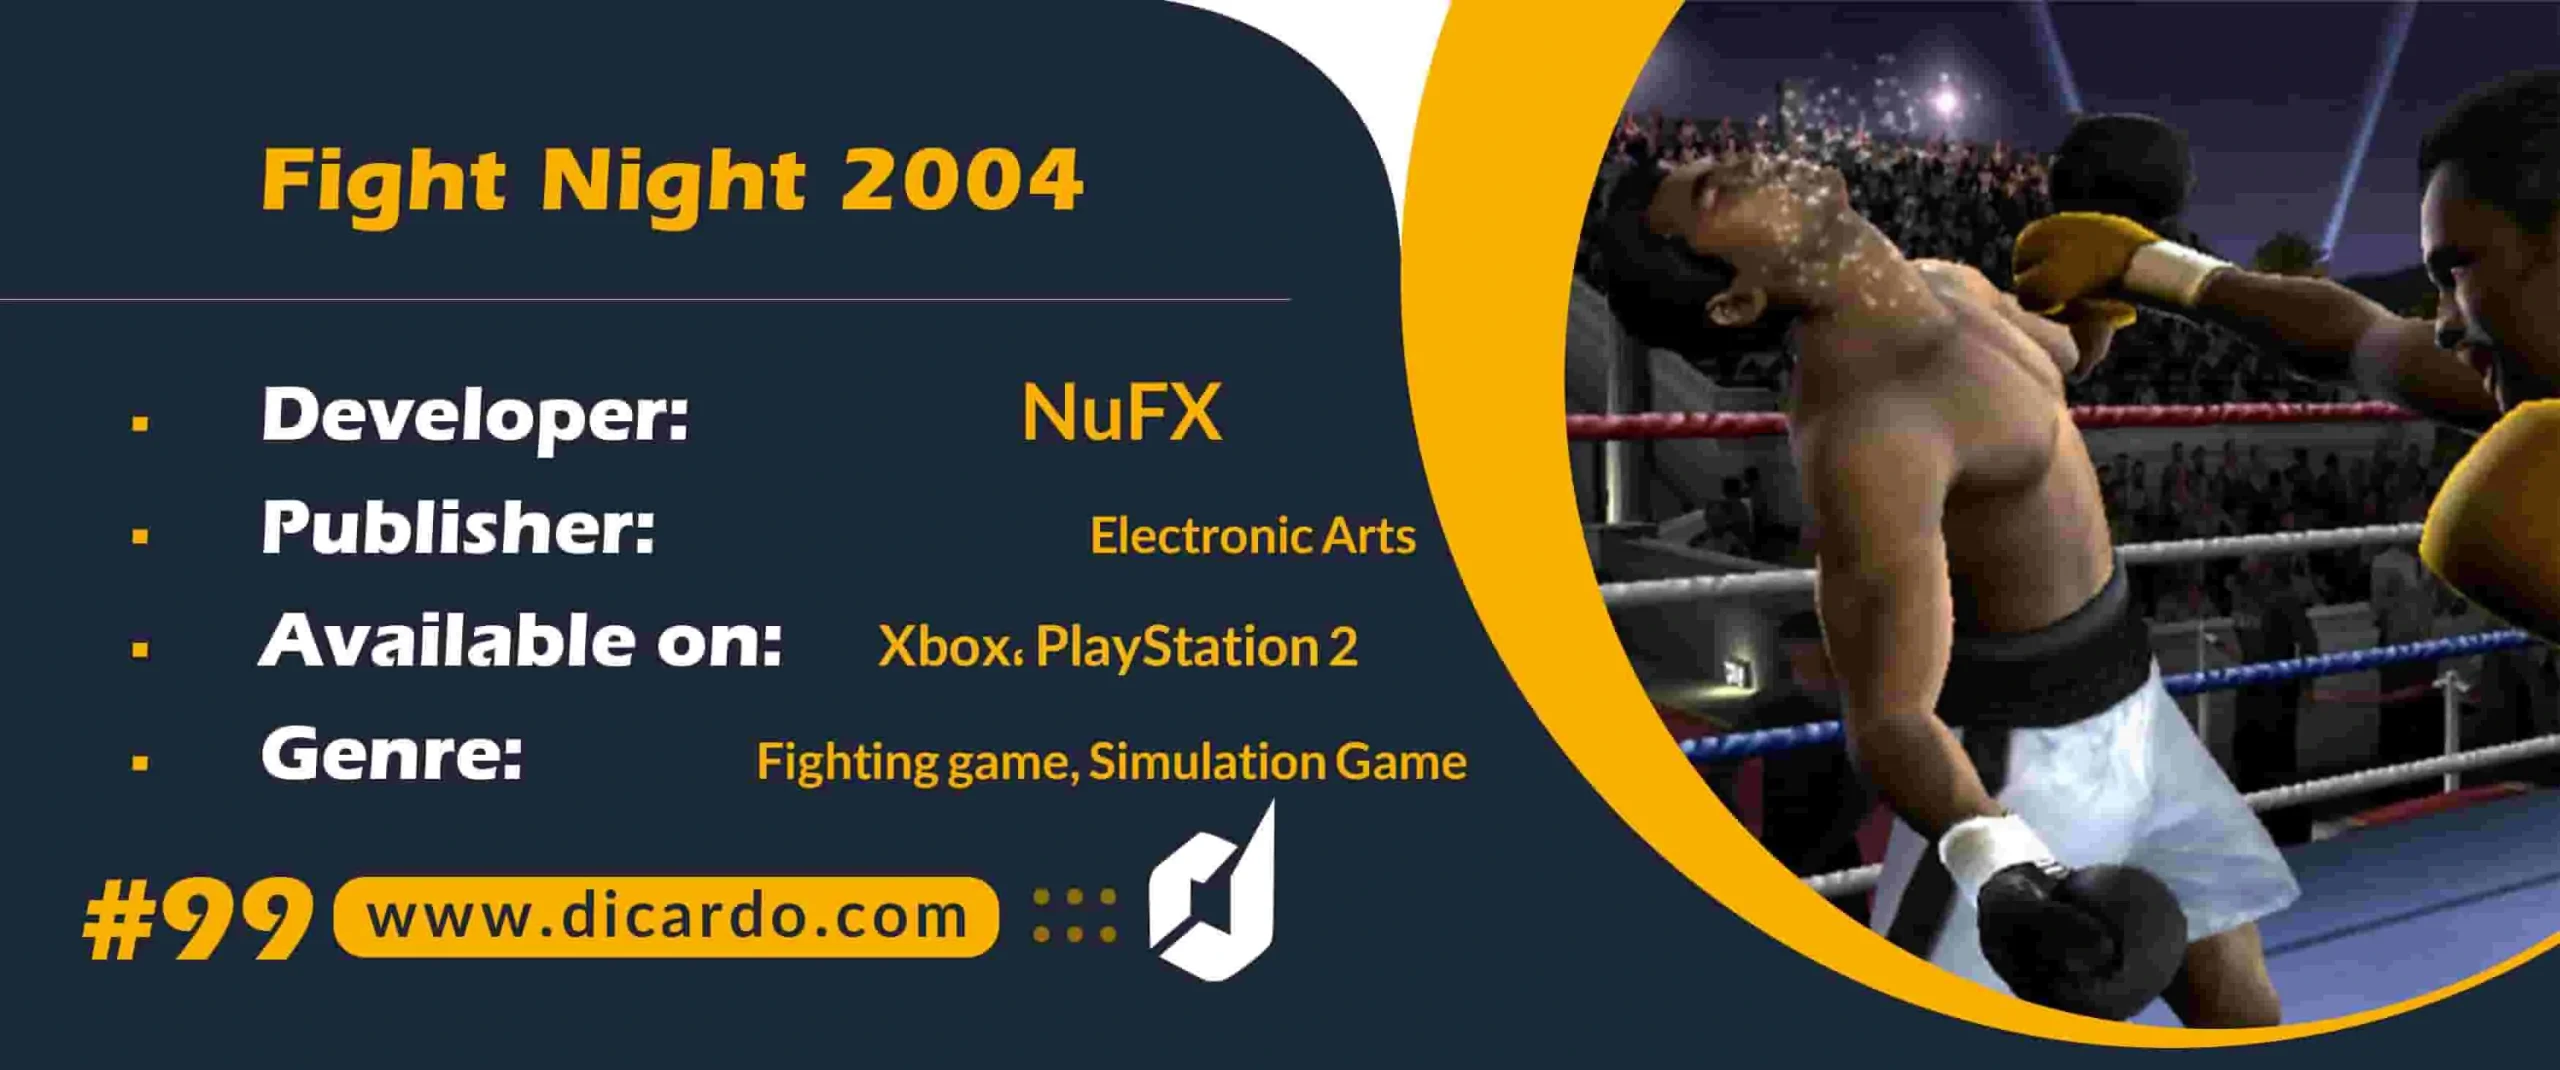 #99 فایت نایت 2004 Fight Night 2004 از بهترین بازیهای ایکس باکس ورزش بوکس